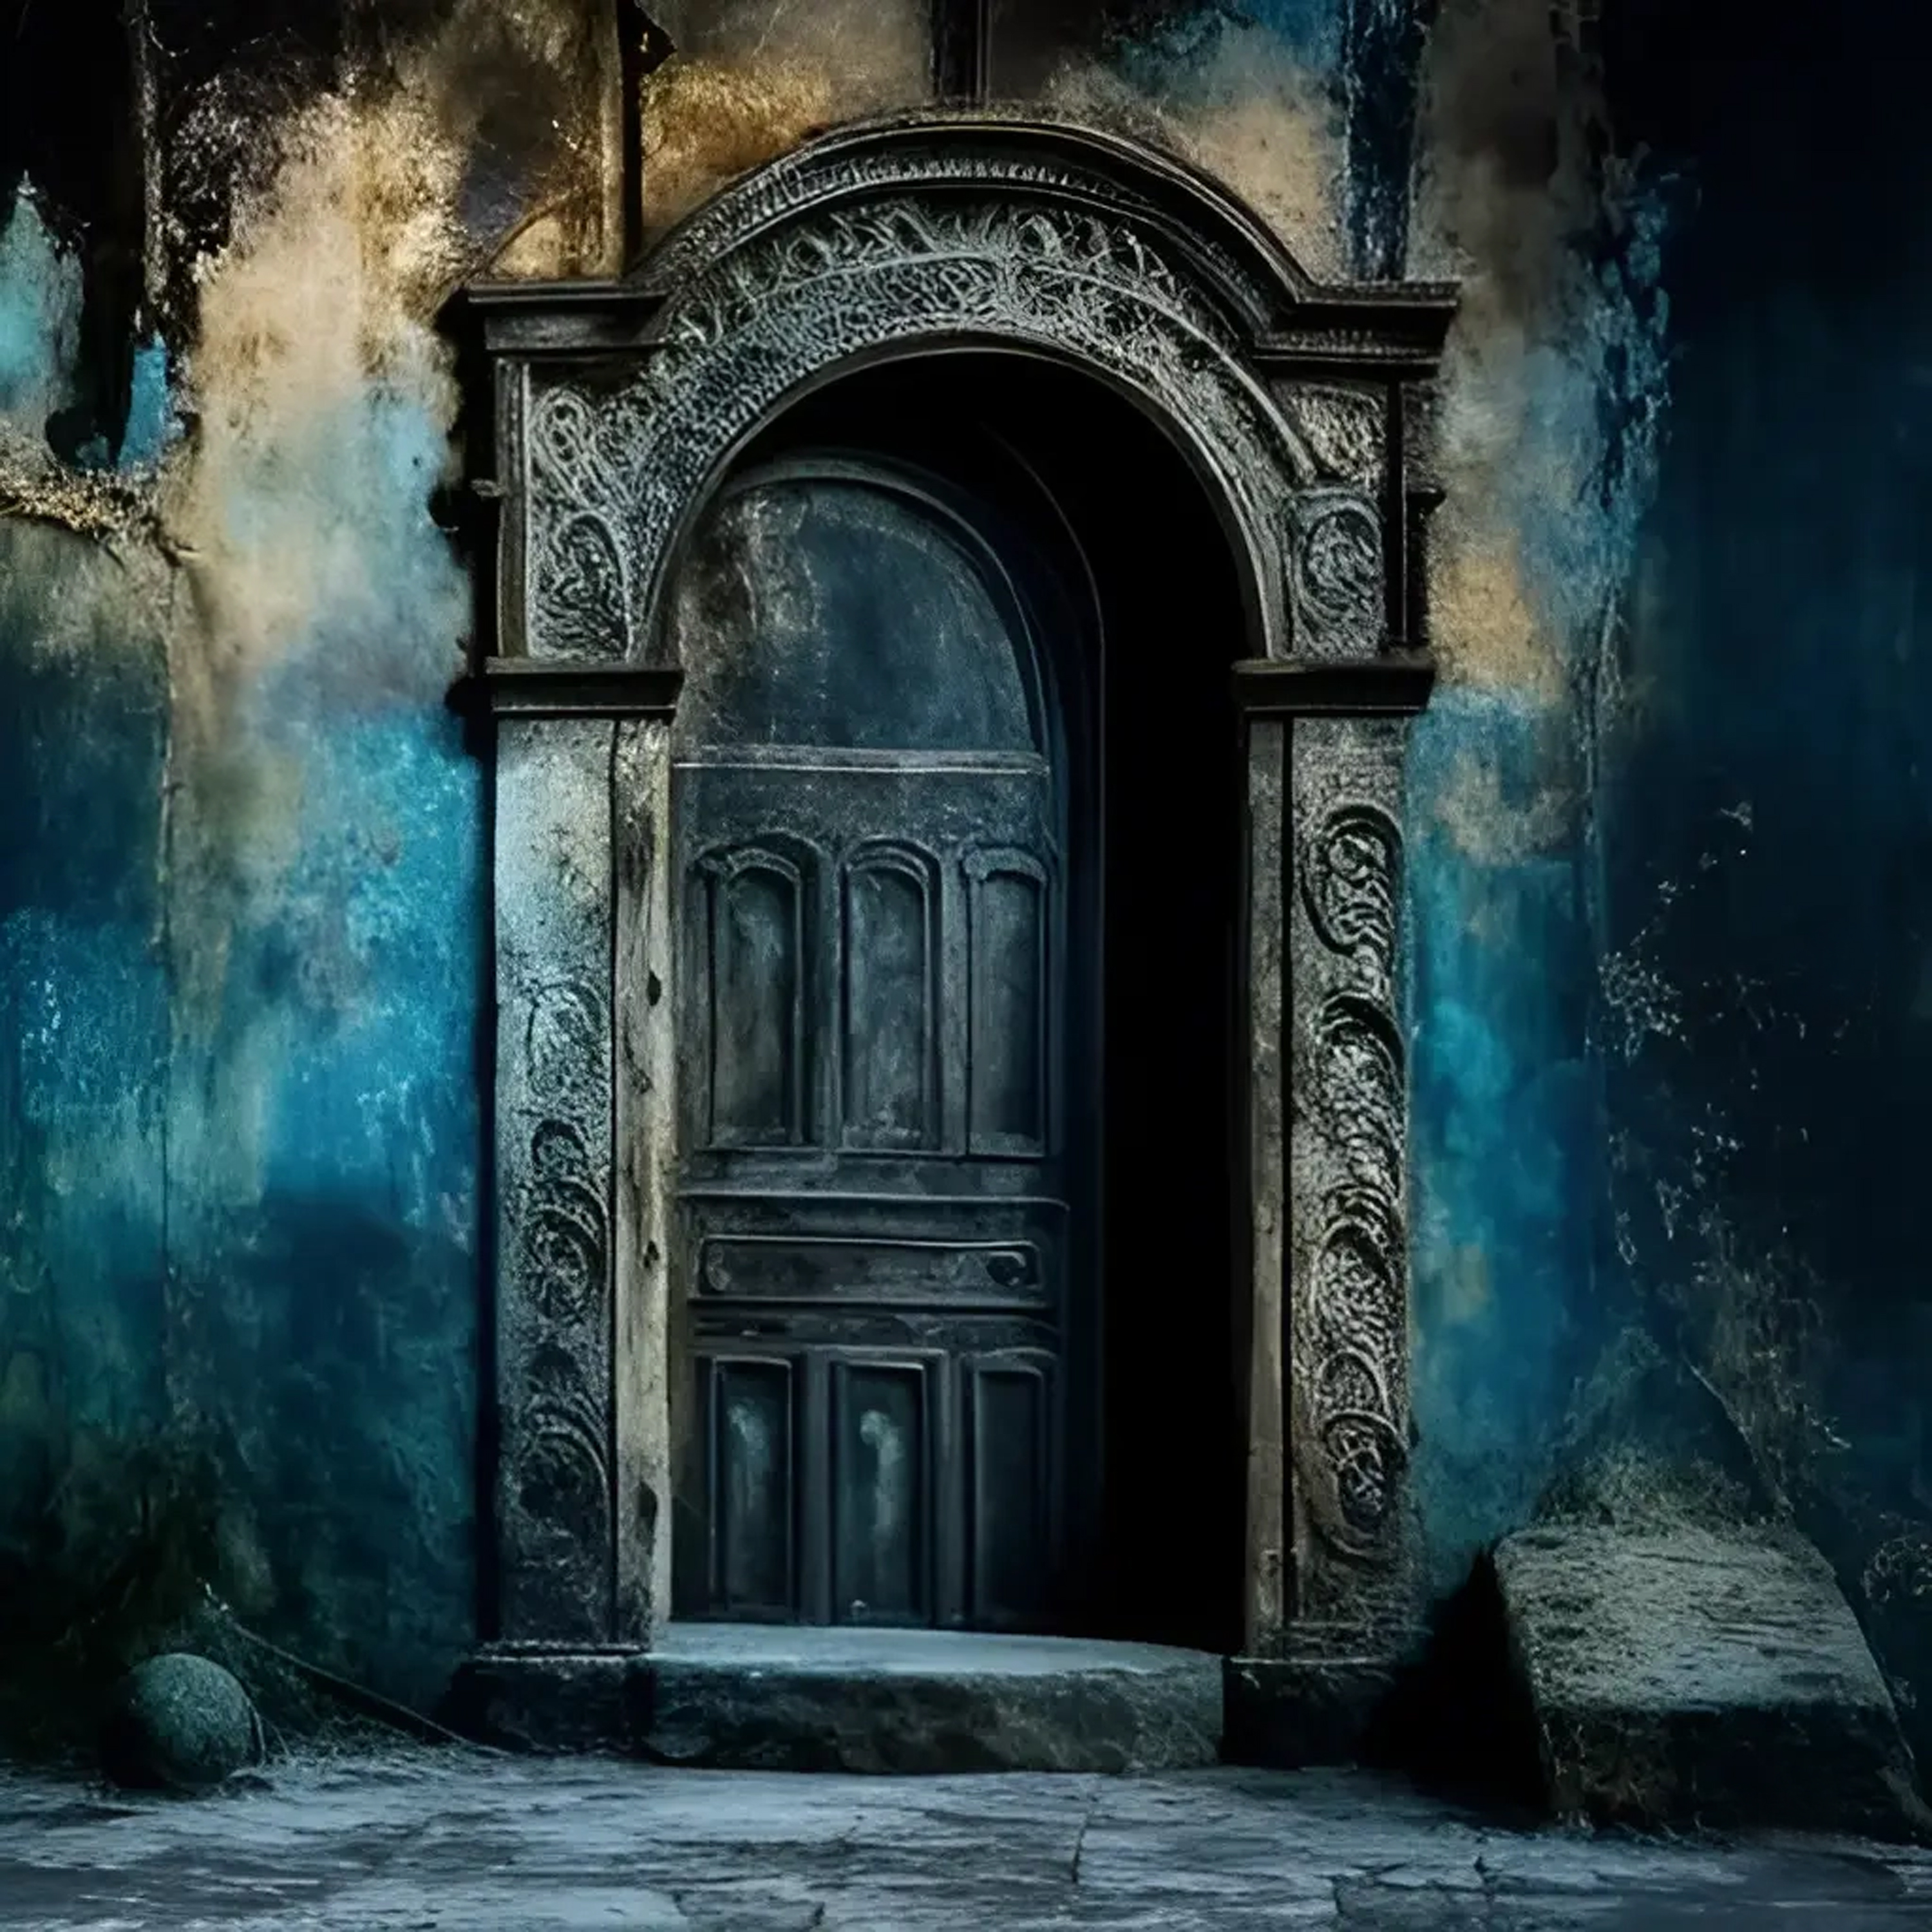 XIV - The door of XNLKX